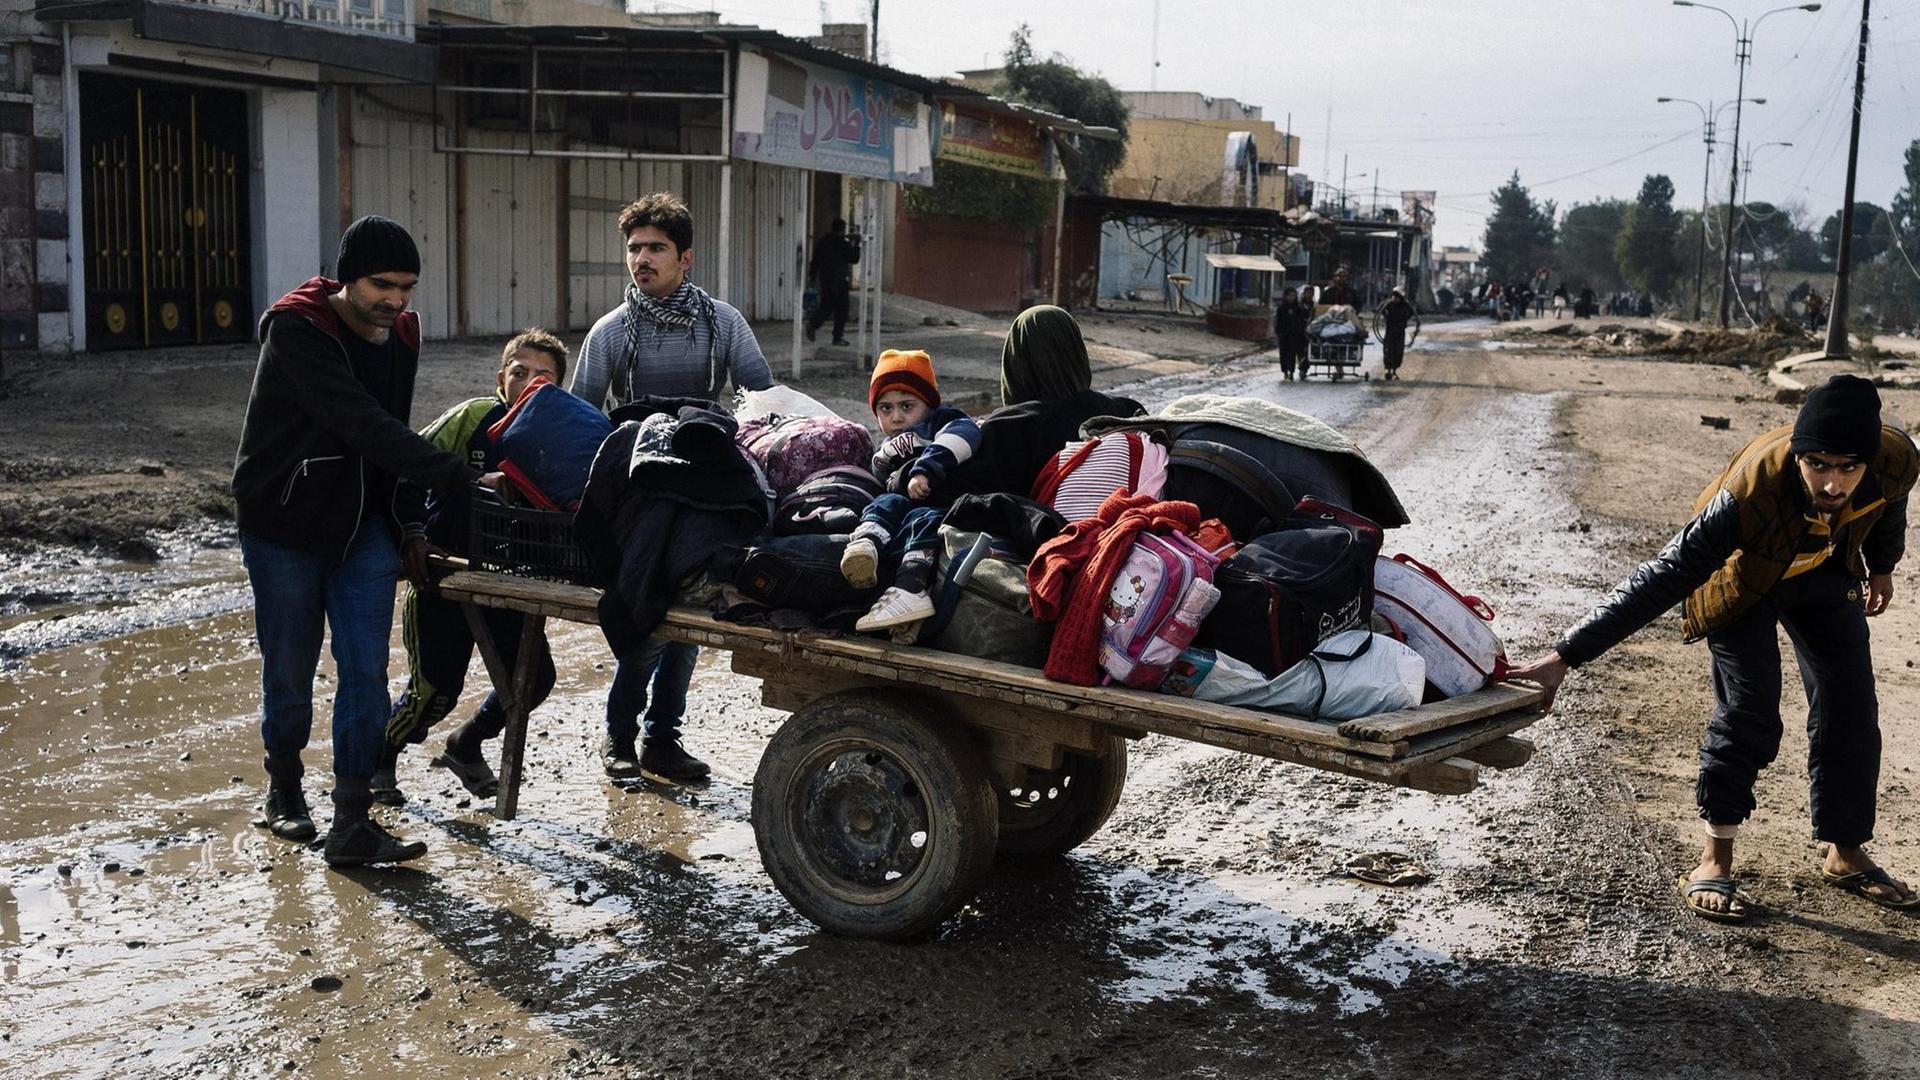 Eine Familie zieht einen improvisierten Wagen mit Kindern und Gepäck über eine schlammige Straße.